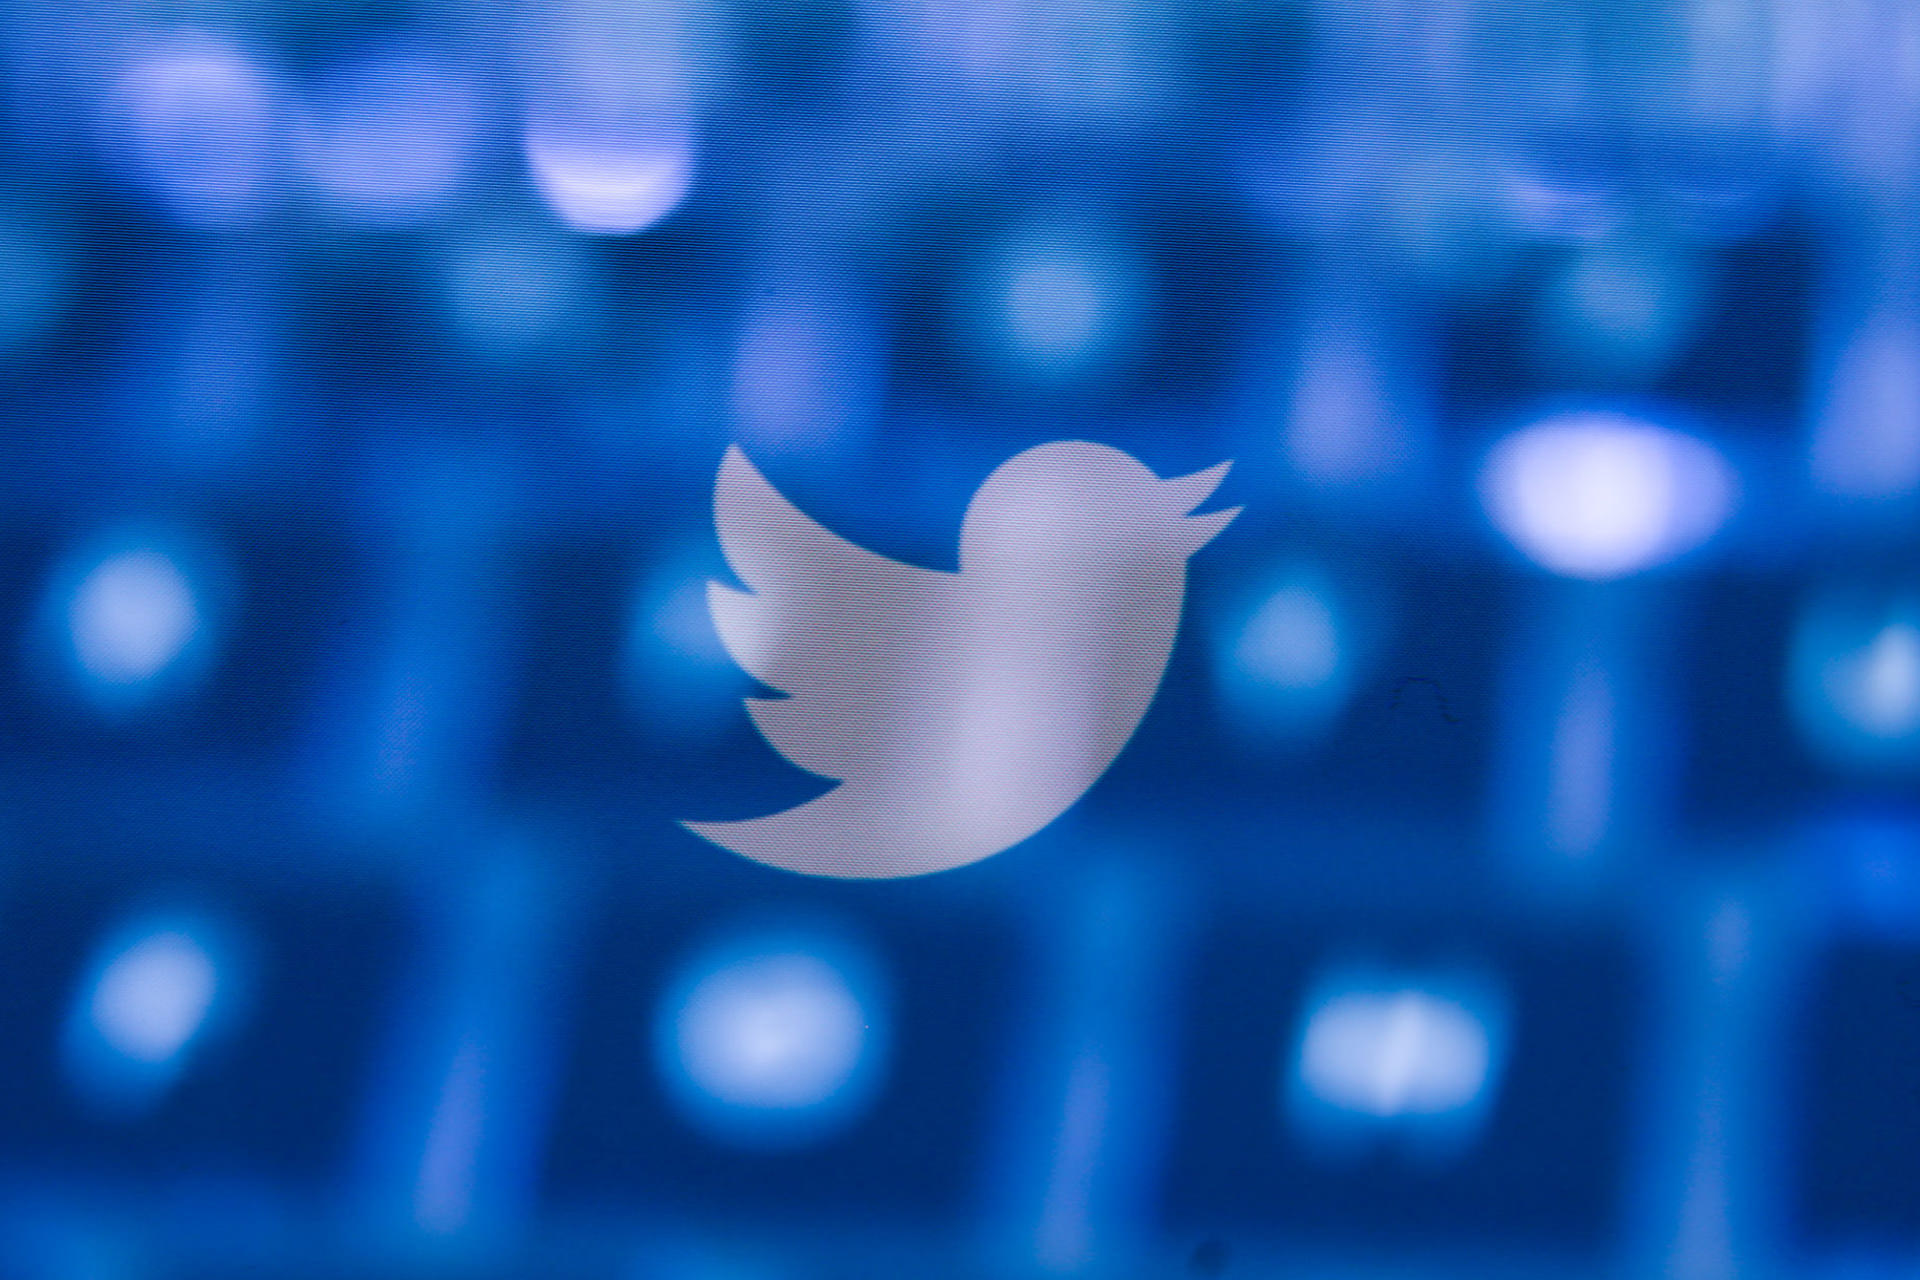 پس‌لرزه افشاگری‌ پیتر زاتکو: کنگره آمریکا تحقیق روی توییتر را آغاز کرد